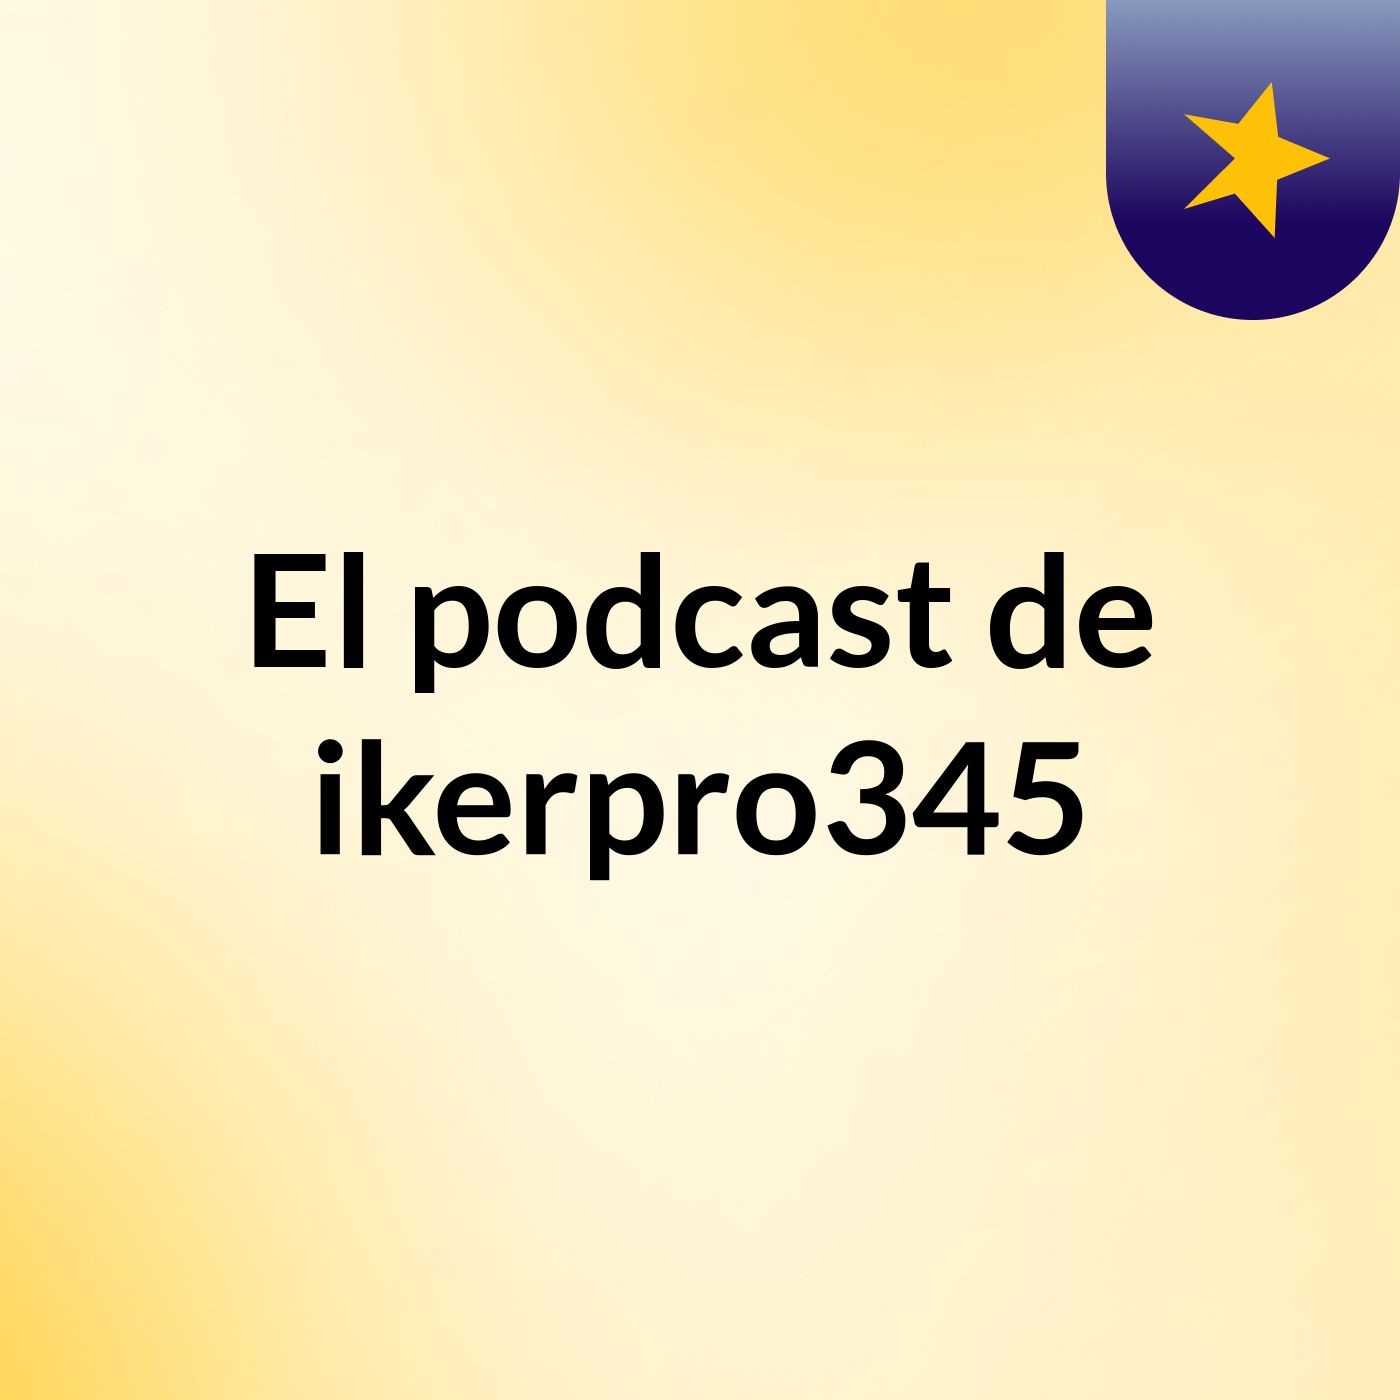 El podcast de ikerpro345